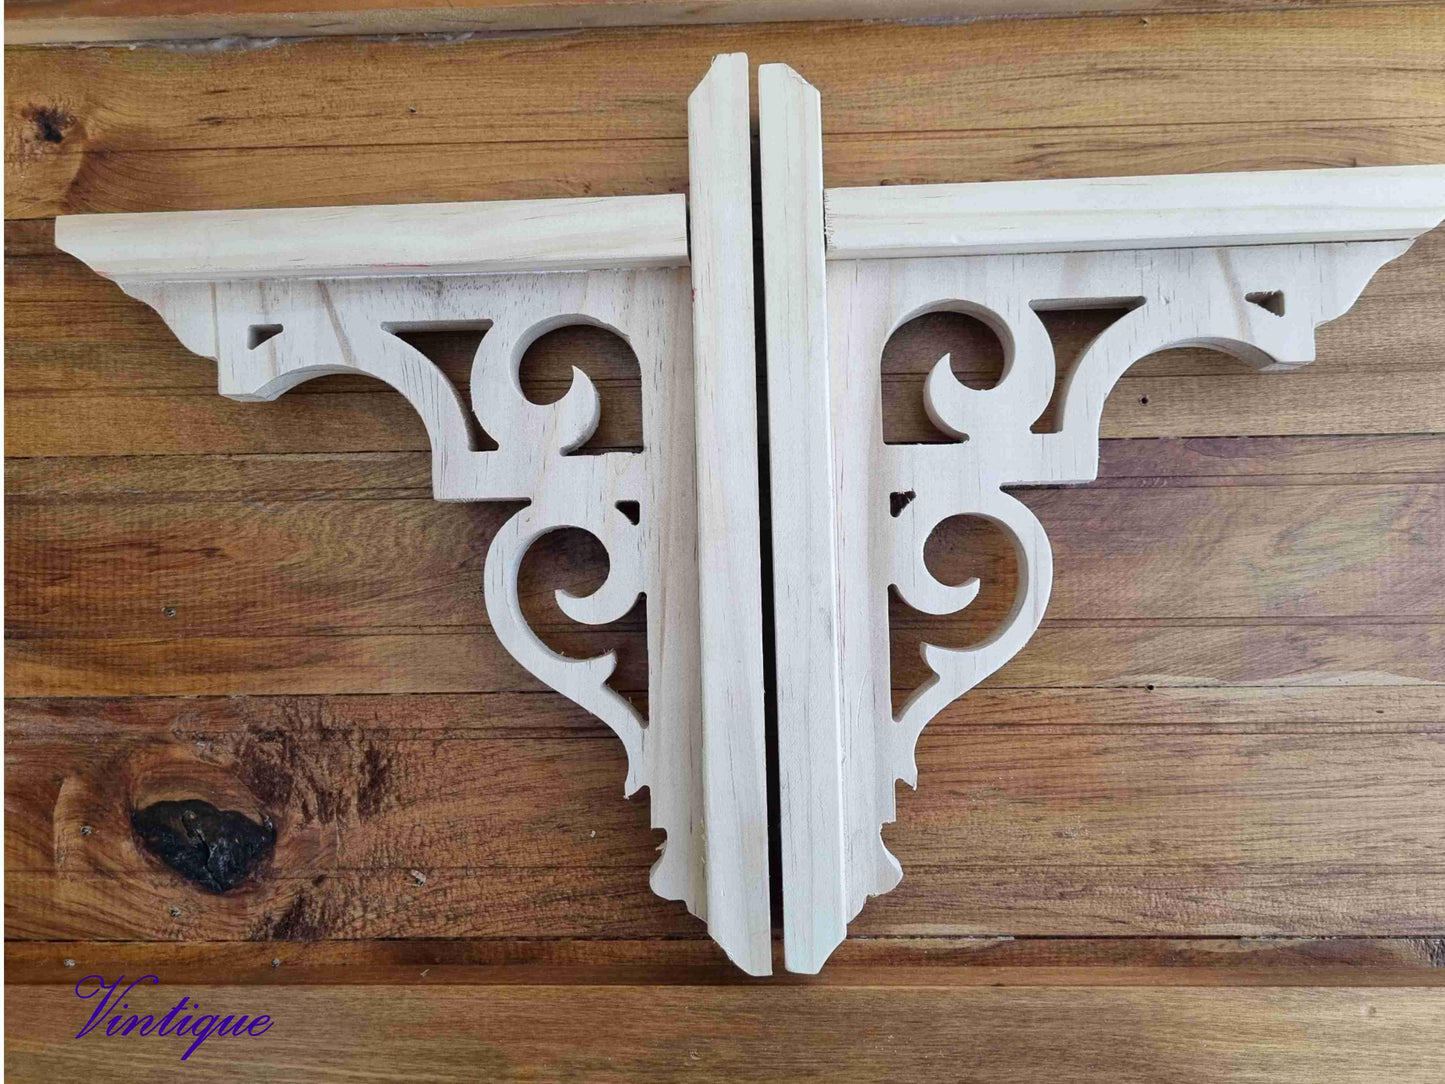 DEVONPORT ornate carved wood shelf Bracket 220mm x 282mm - Vintique Concepts